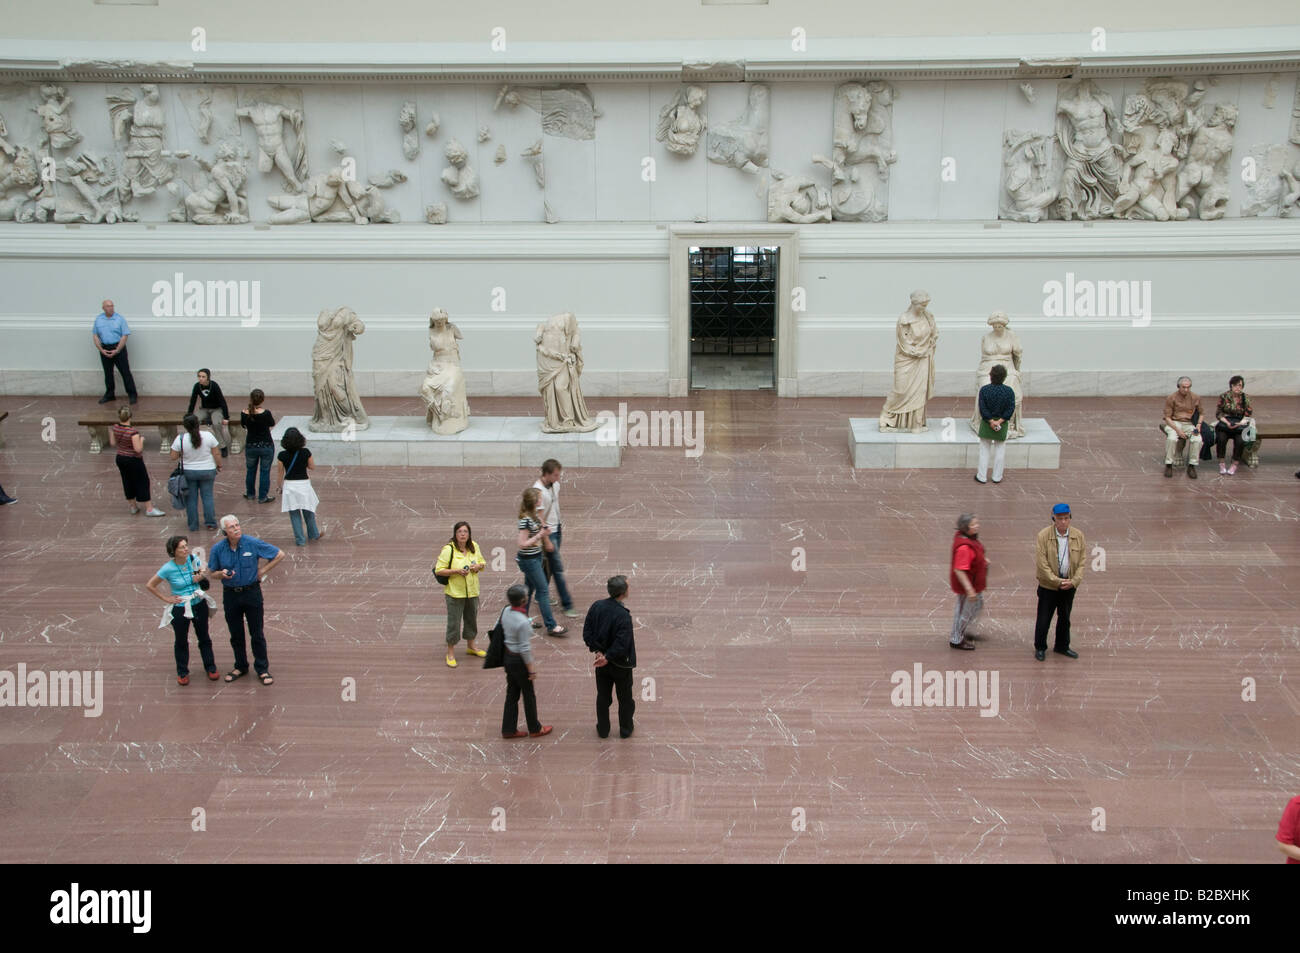 Besucher in der Halle, die das Griechische Pergamon Altar im 2. Jahrhundert v. Chr. im Pergamonmuseum Museumsinsel Museumsinsel Berlin Deutschland zeigt Stockfoto